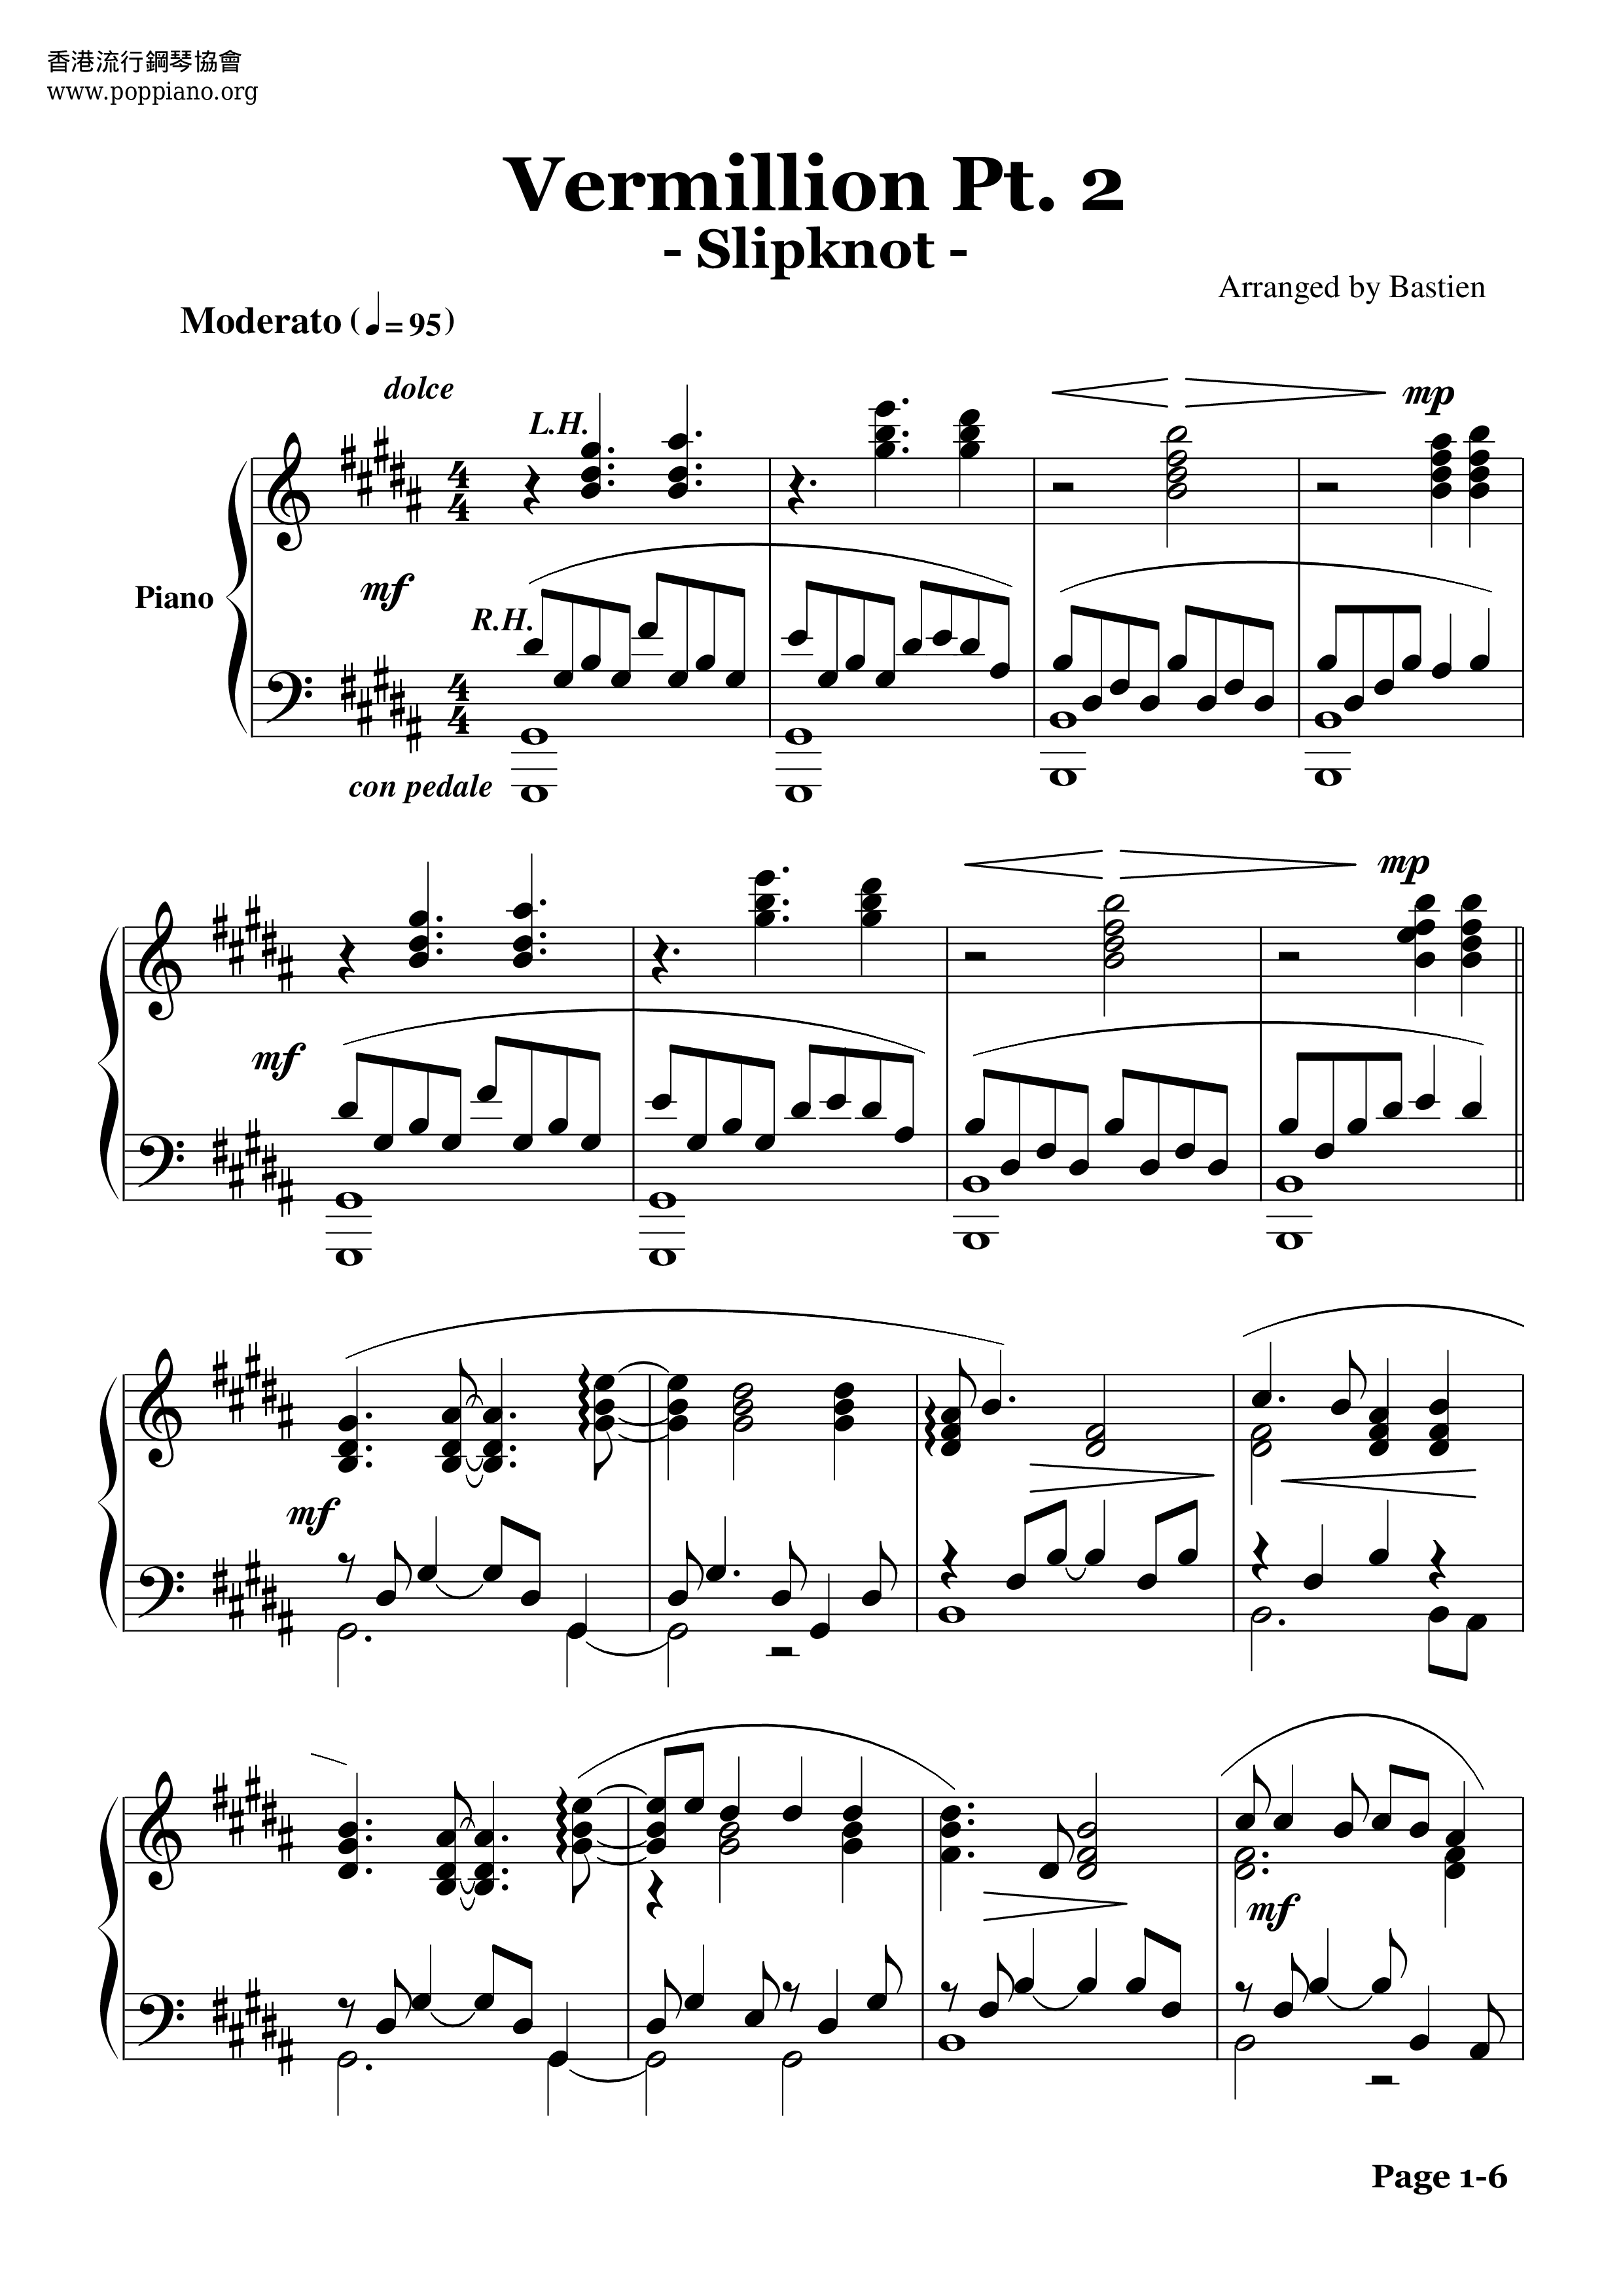 Vermillion Pt. 2ピアノ譜